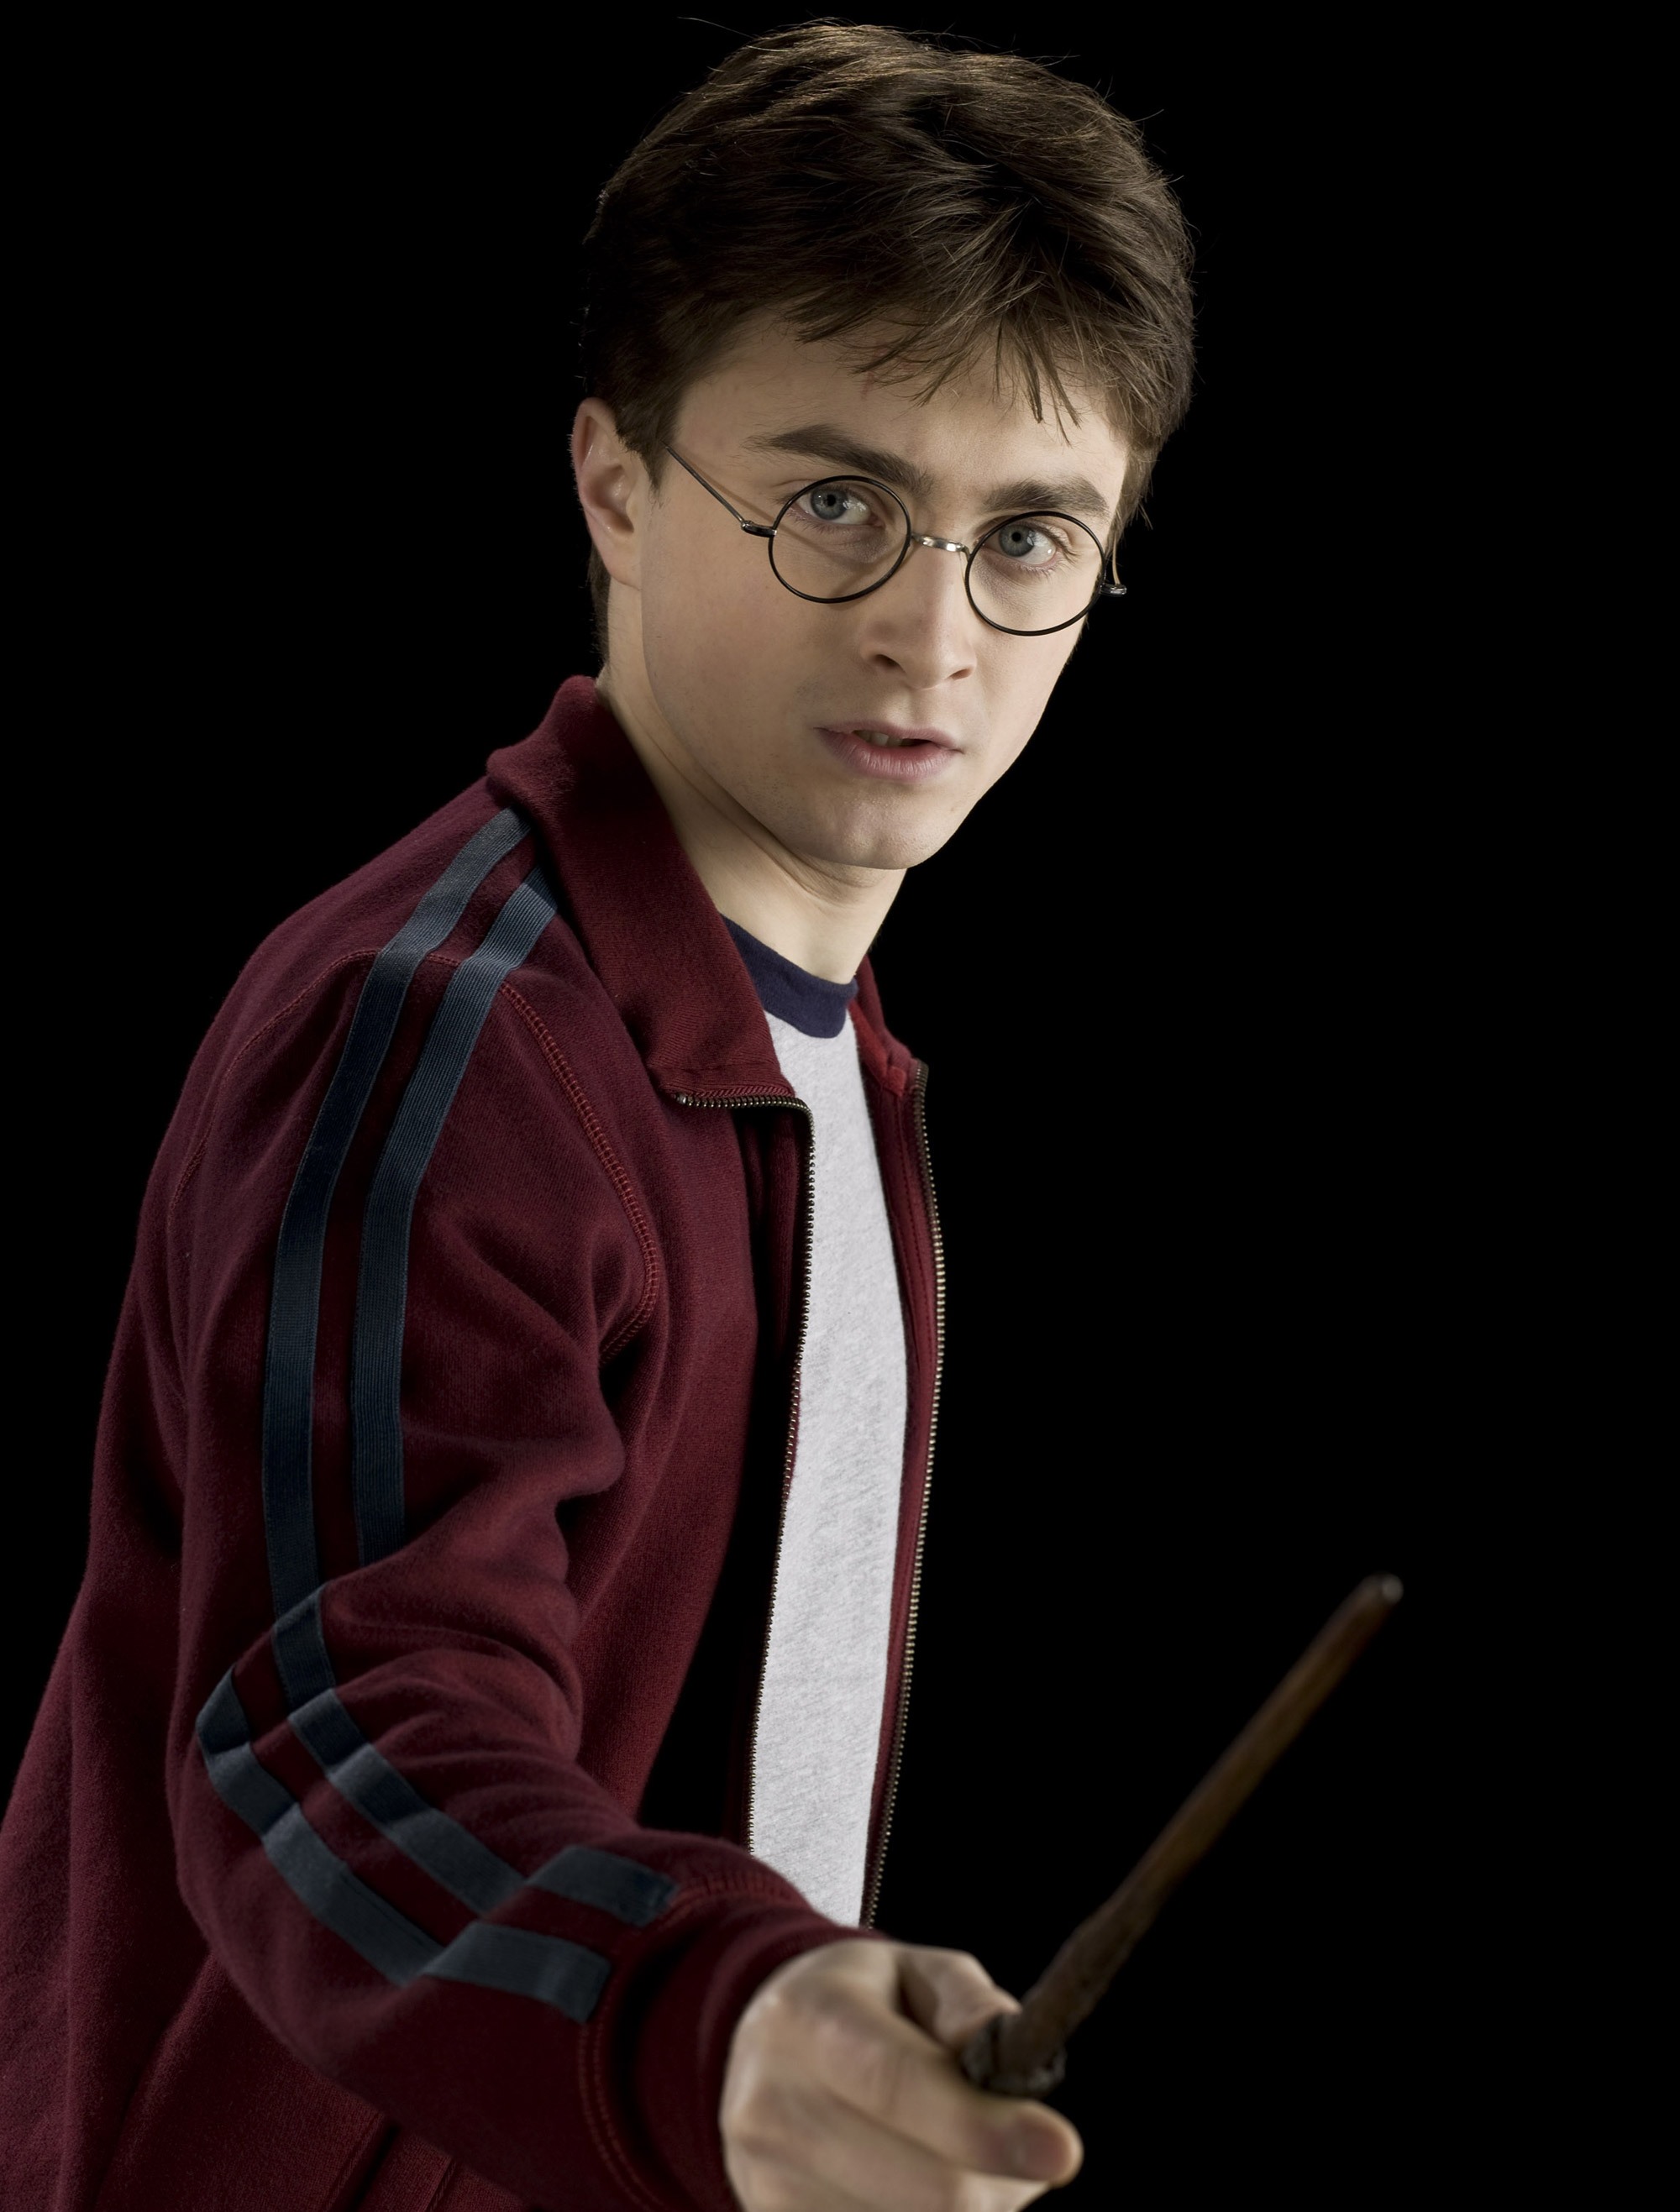 Harry Potter e la pietra filosofale» usciva 18 anni fa, come sono